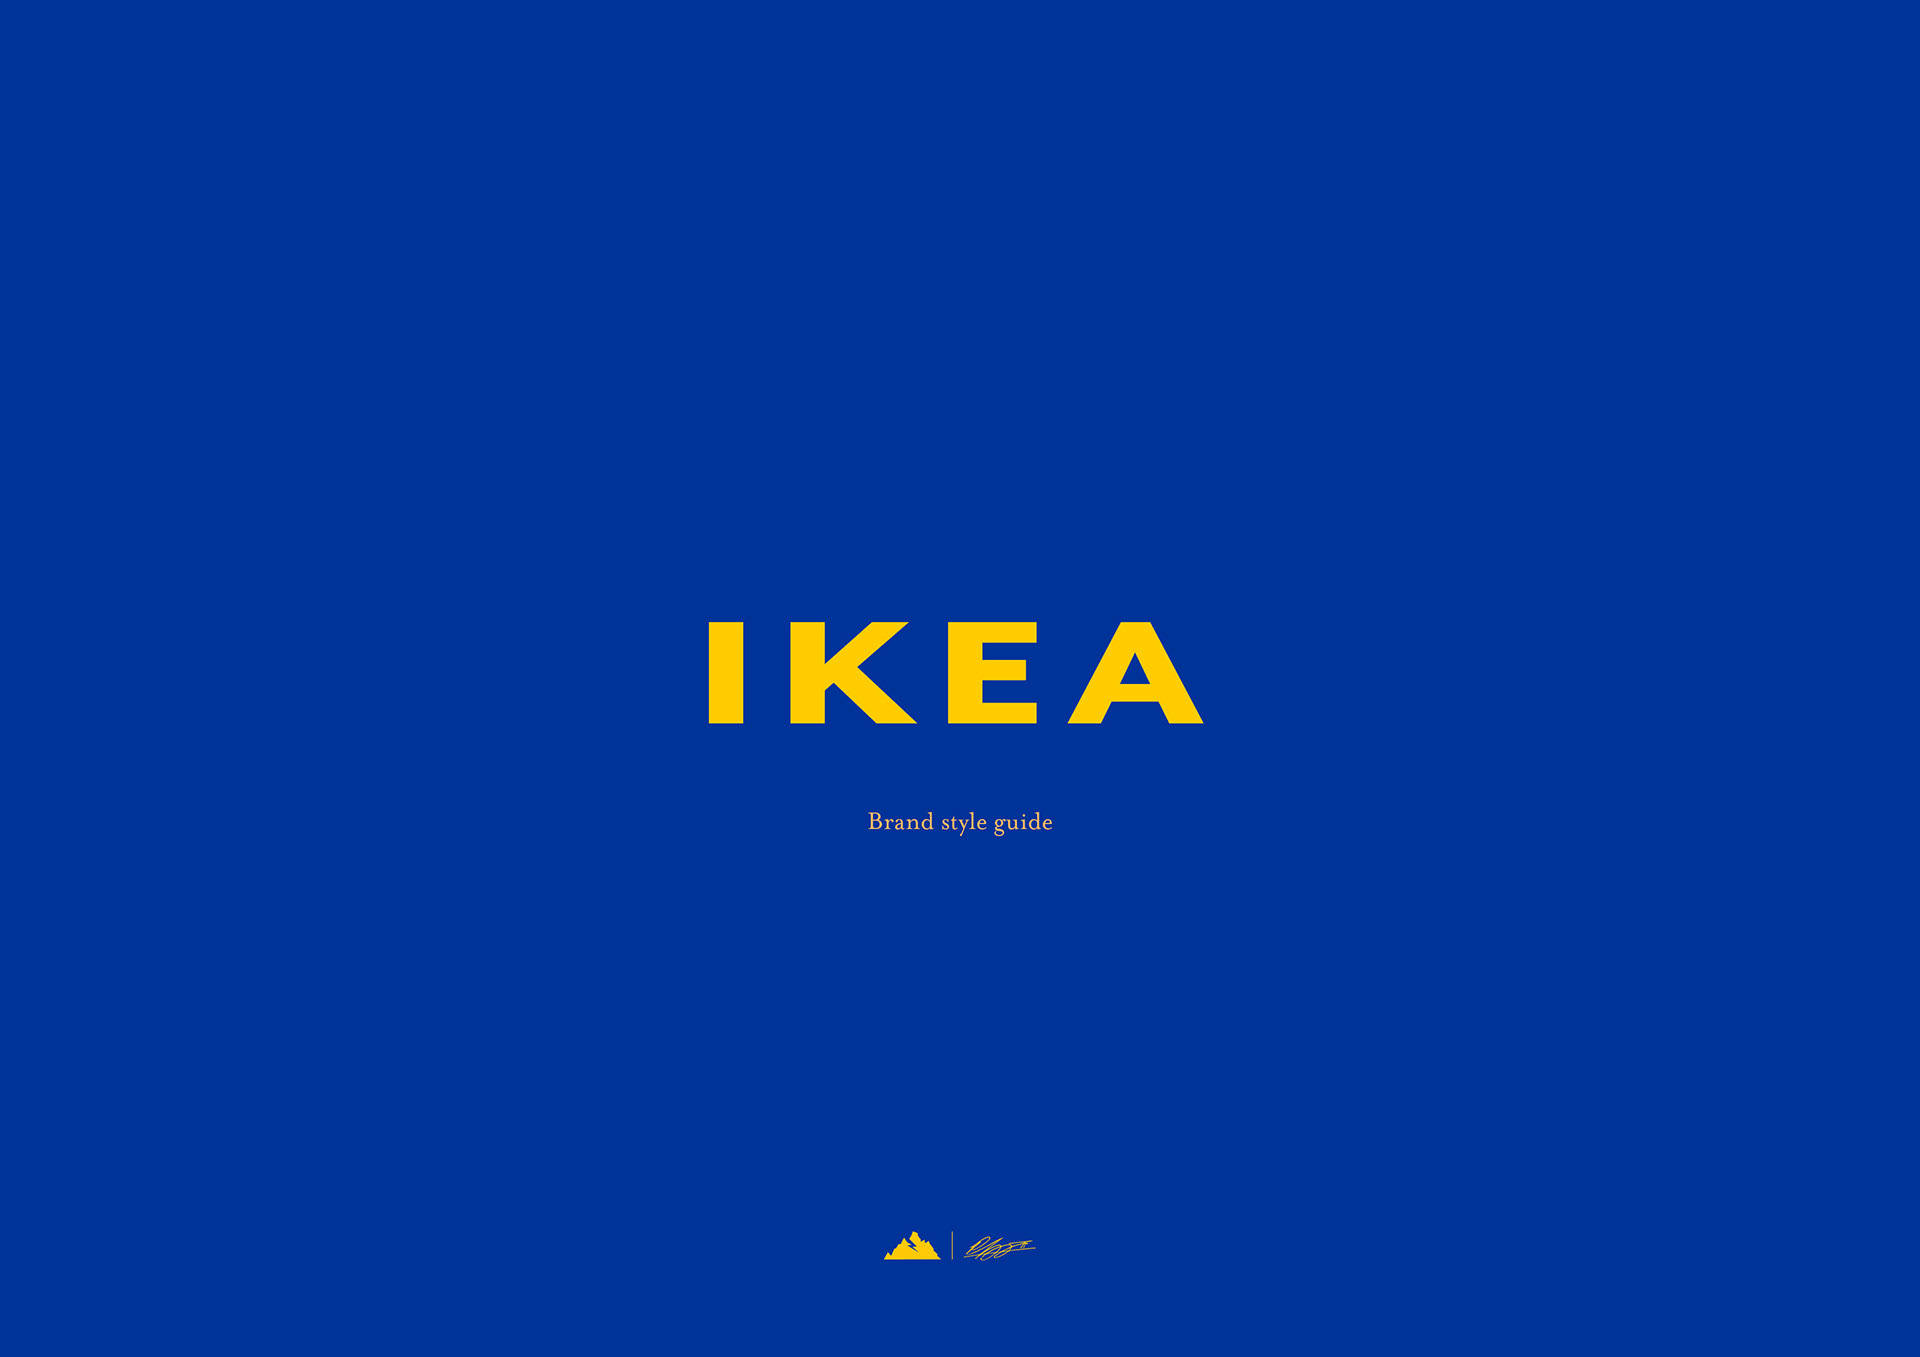 Ikeasvarumärkesstilguide För Logotypen Wallpaper